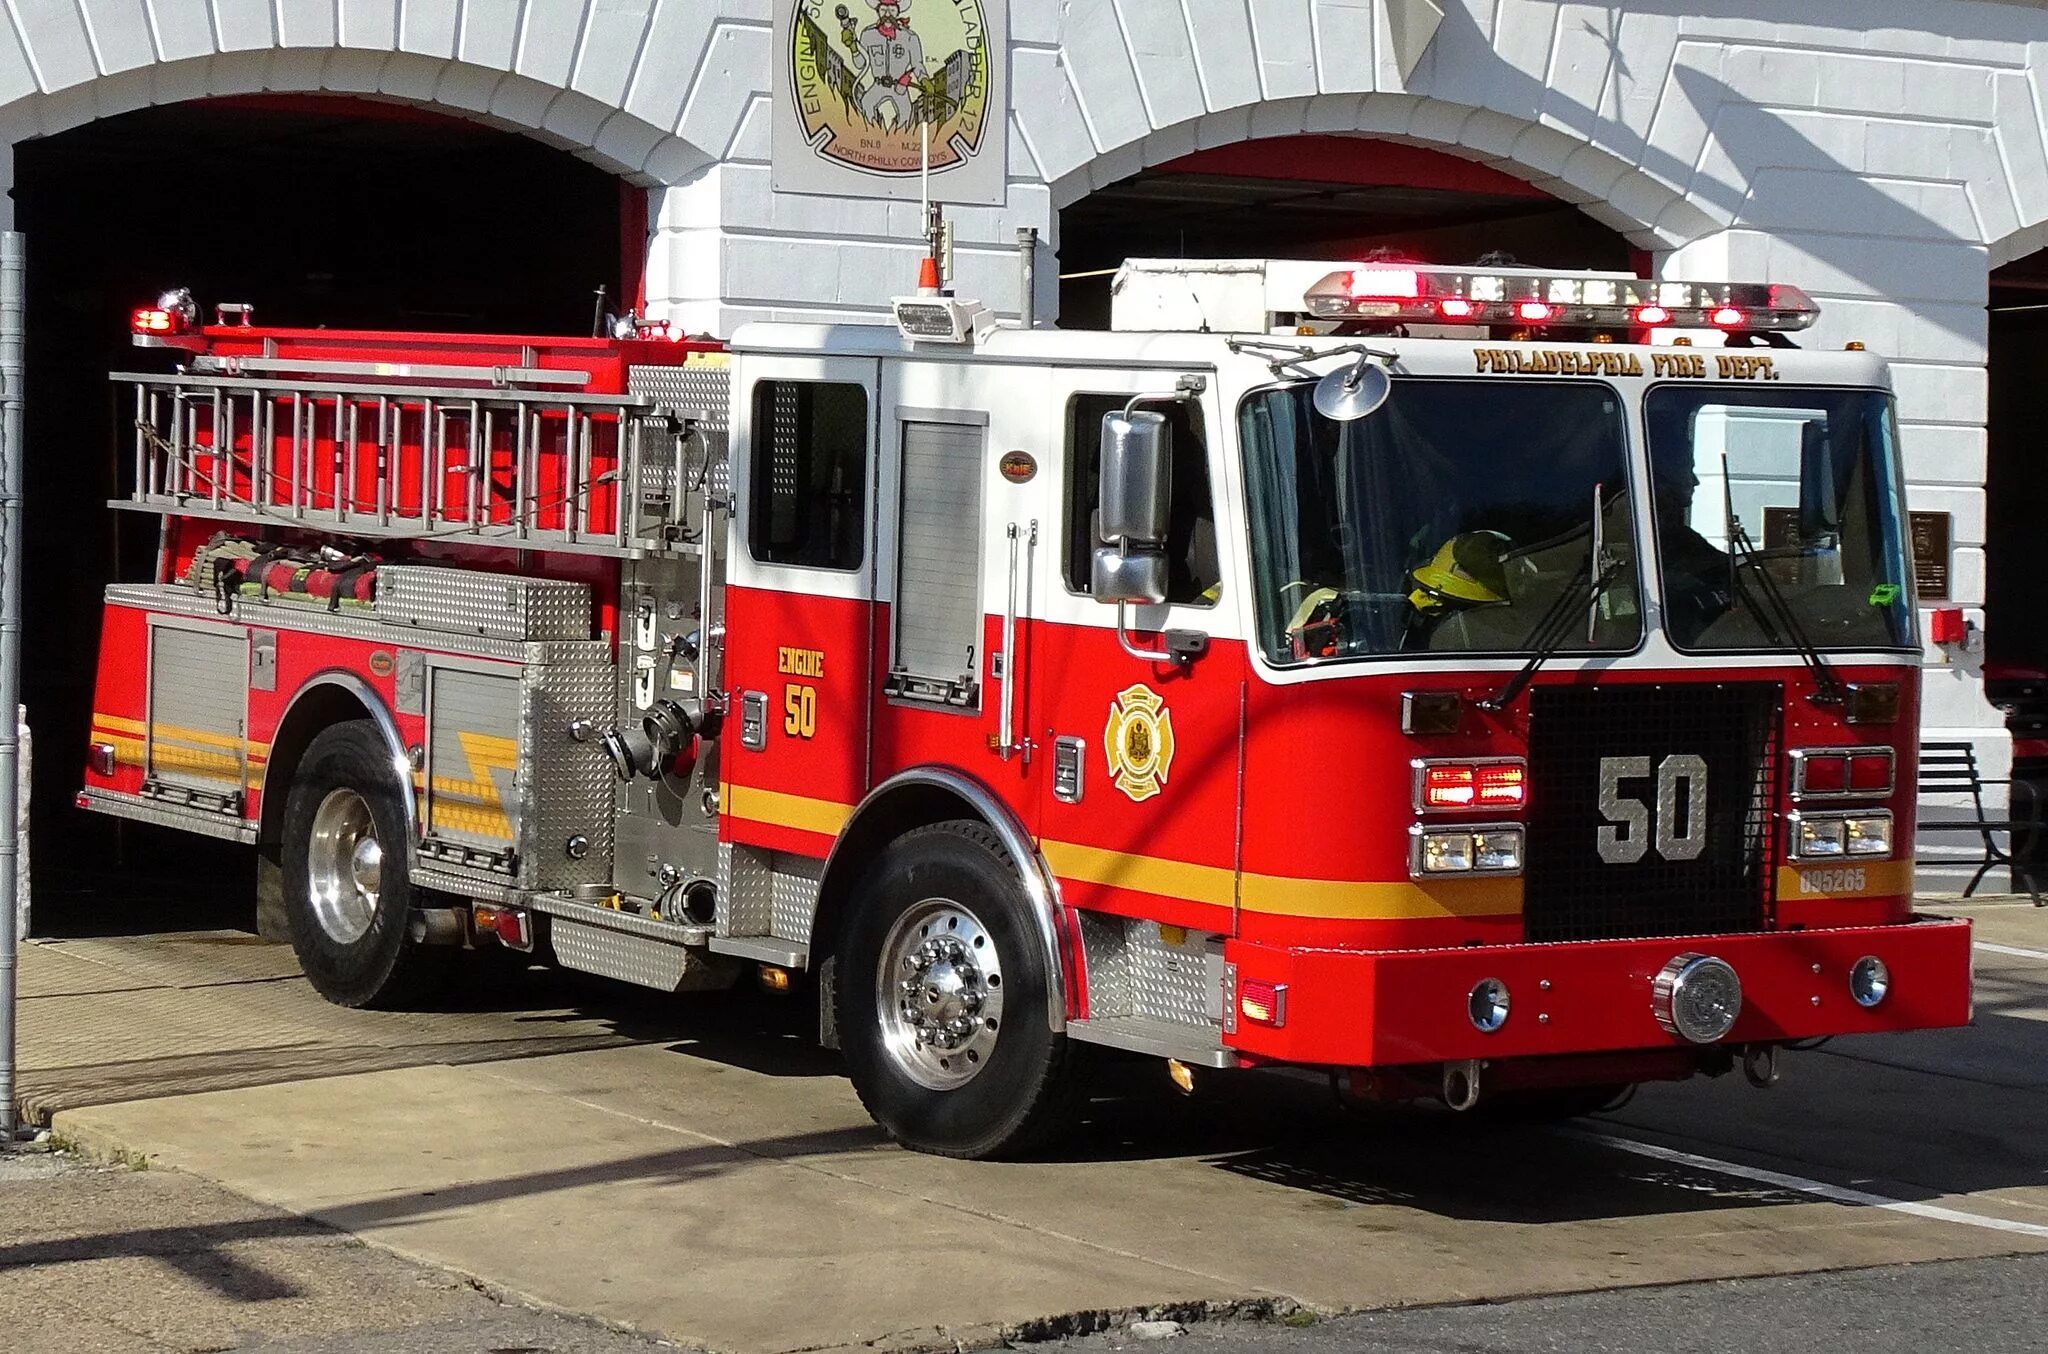 Пожарная машина КМЕ International. Пожарная машинка (20 см) Fire-Fighting vehicle bp738. Пожарный фургон. Пожарный грузовик